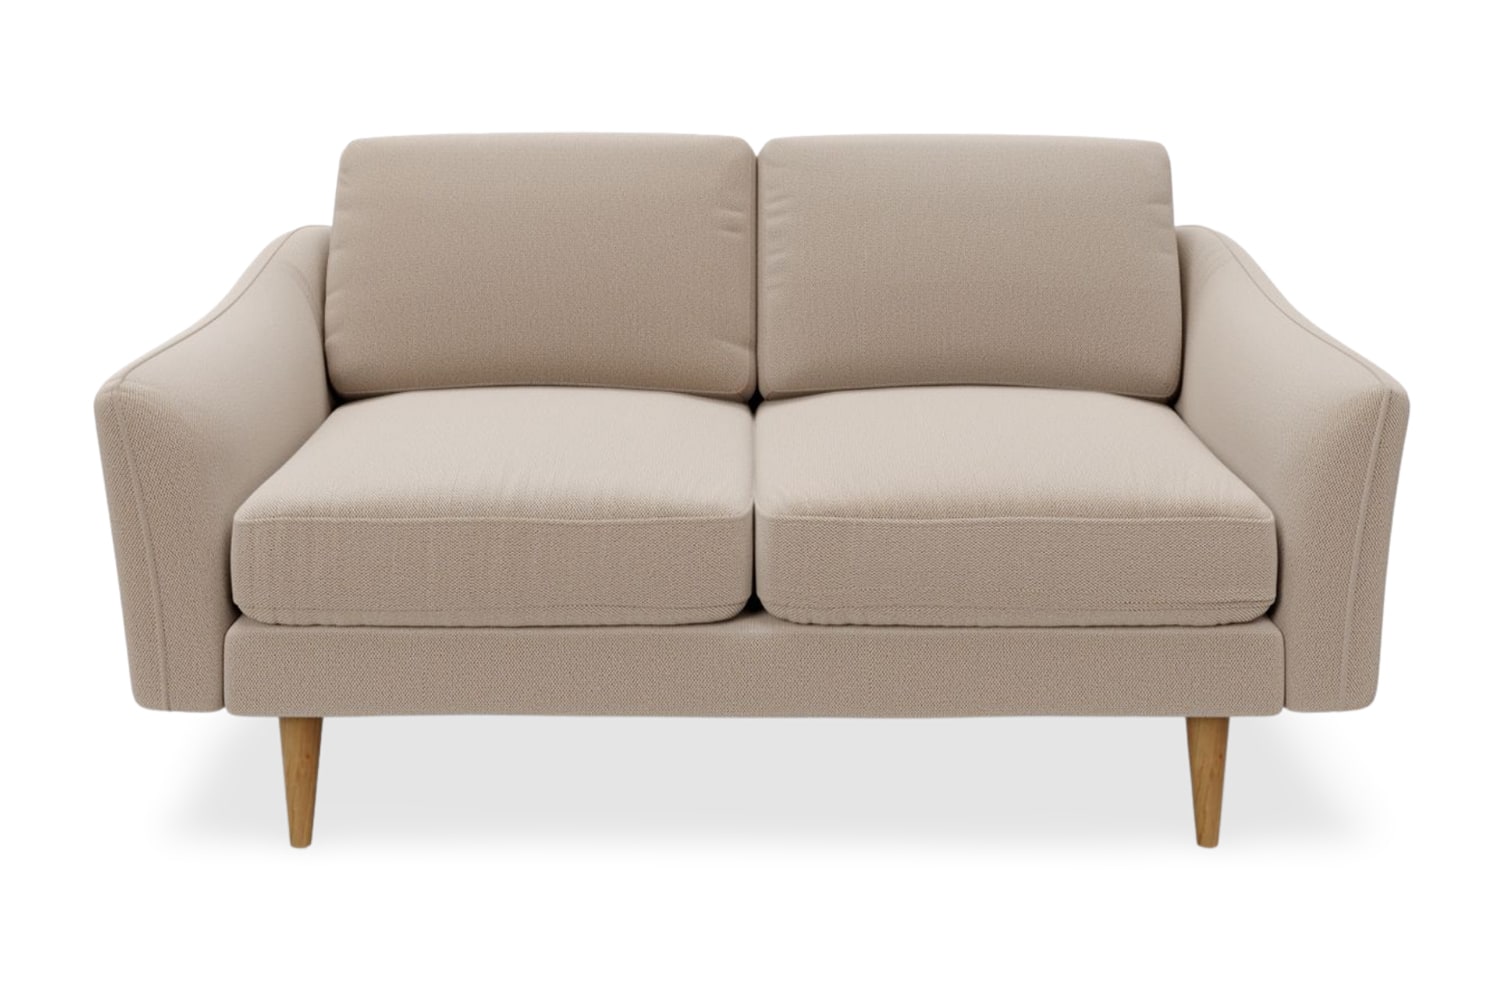 SNUG | The Rebel 2 Seater Sofa in Oatmeal variant_40414889508912